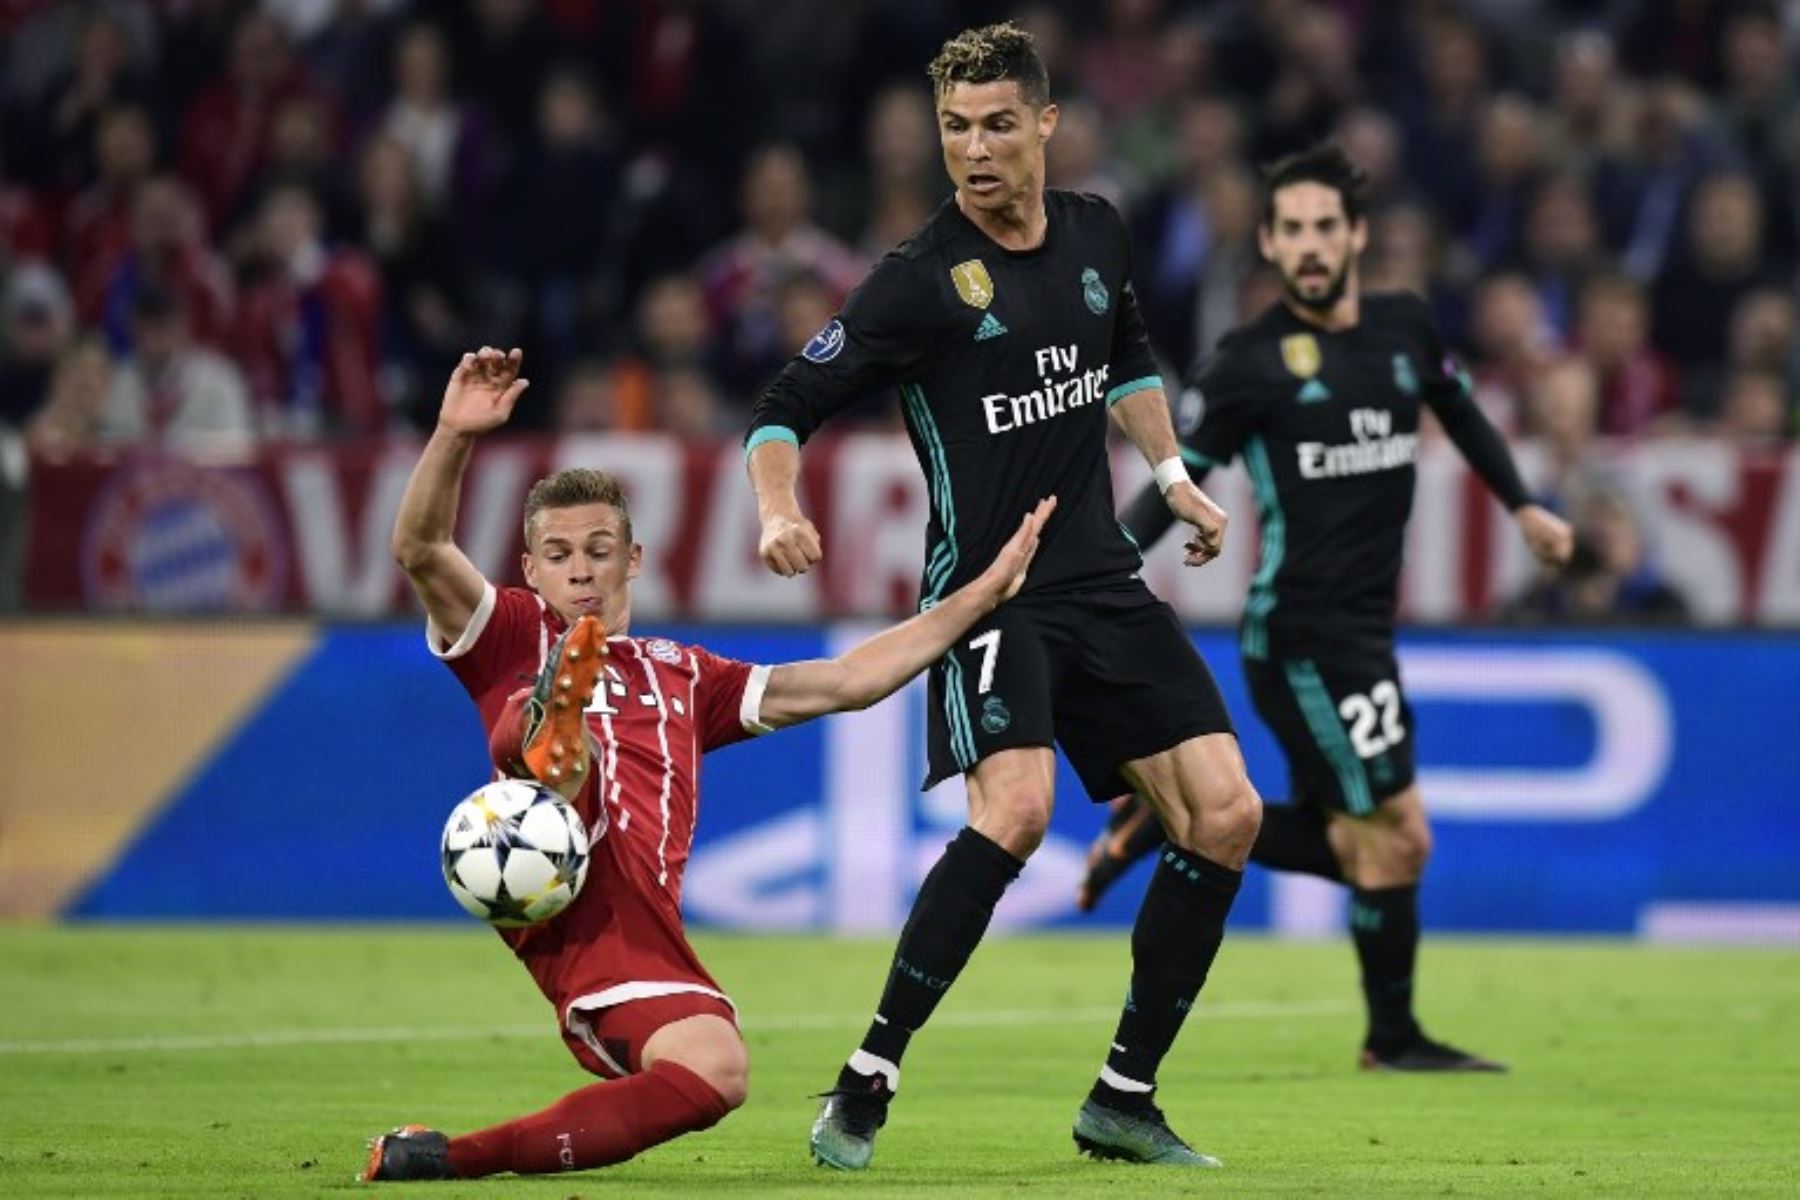 El alemán del Bayern Munich Joshua Kimmich compite con el delantero del Real Madrid Cristiano Ronaldo durante el partido de ida de semifinales de la UEFA Champions League.Foto:AFP